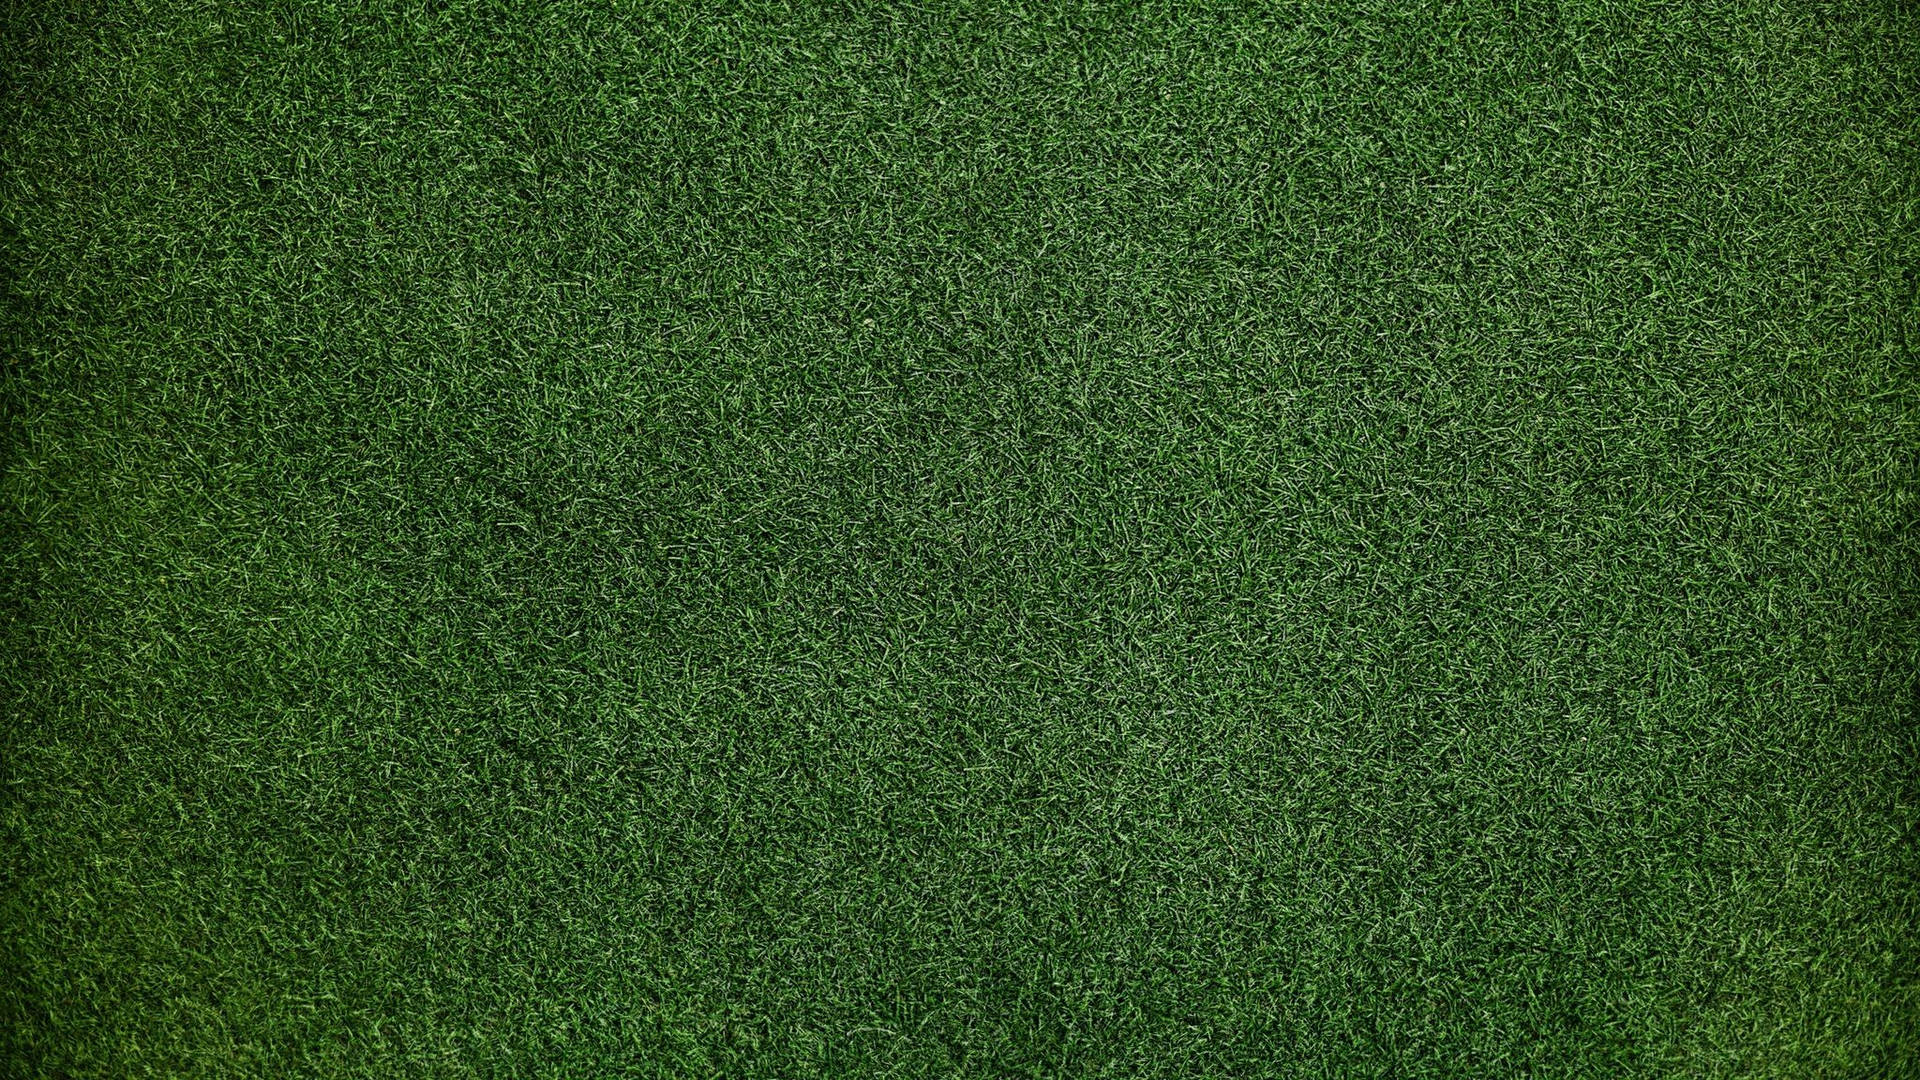 Dark Green Grass Texture Background